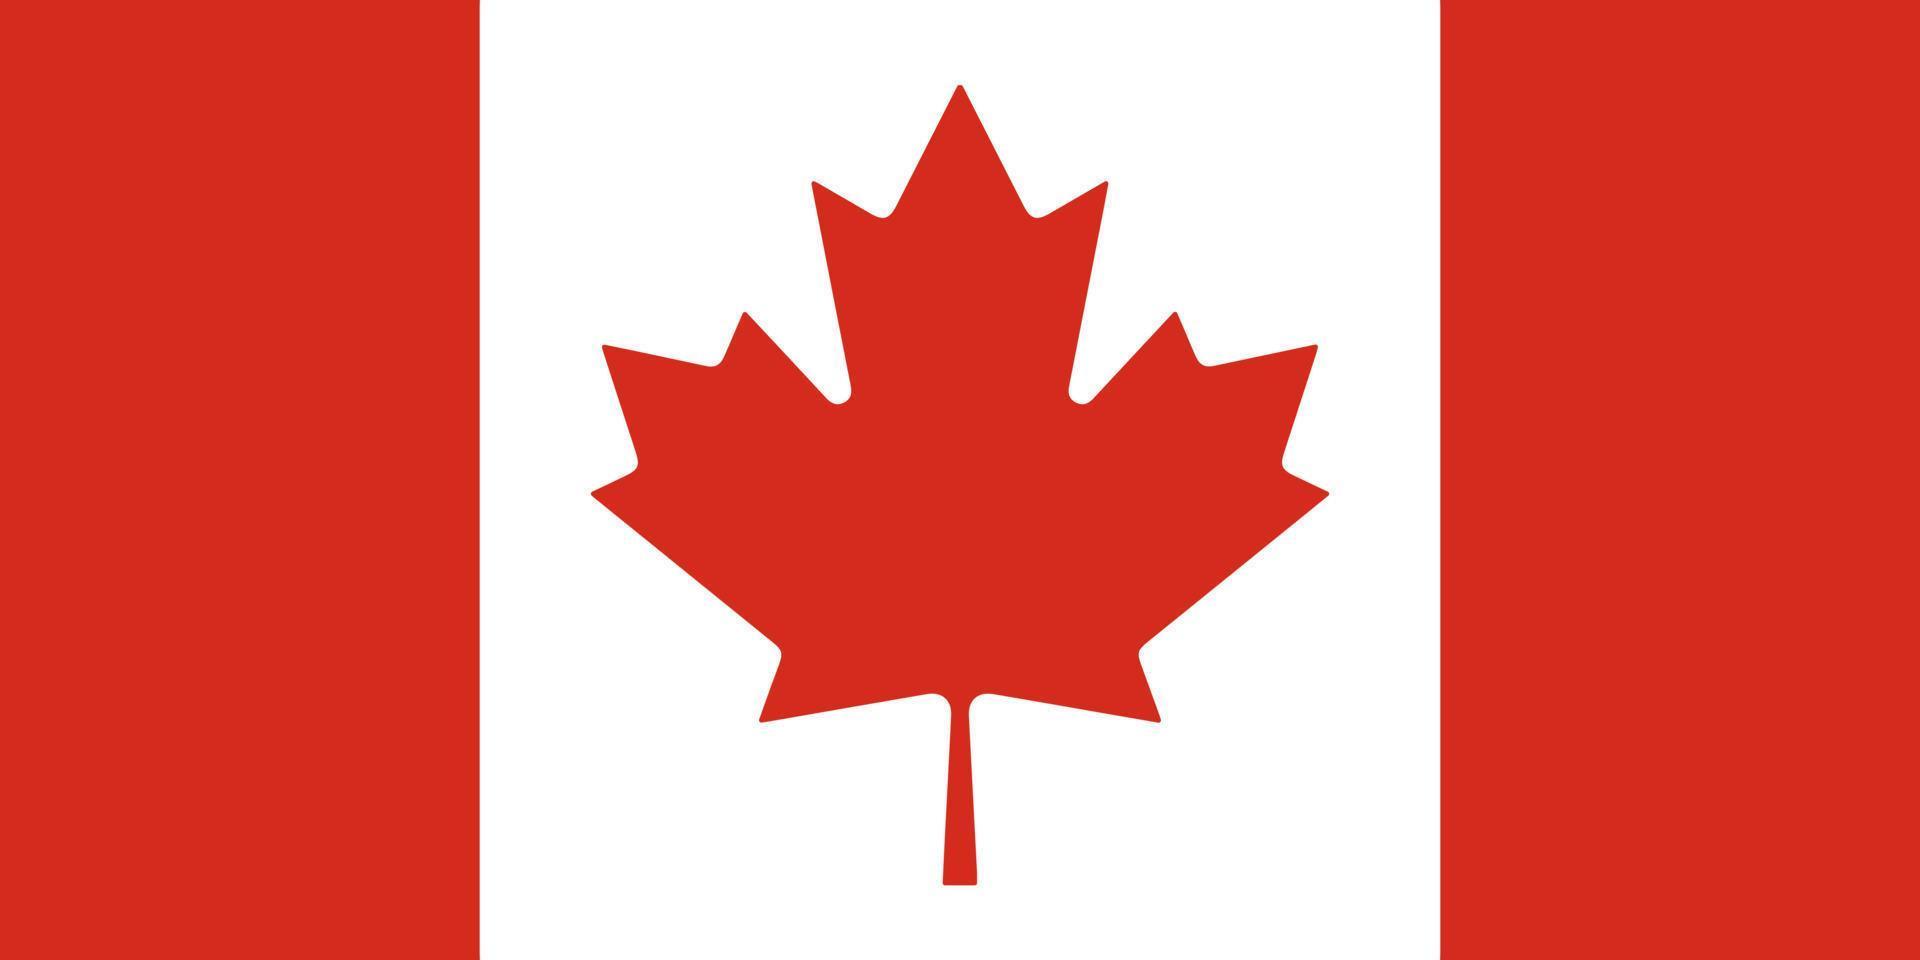 kanada-flagge einfache illustration für unabhängigkeitstag oder wahl vektor